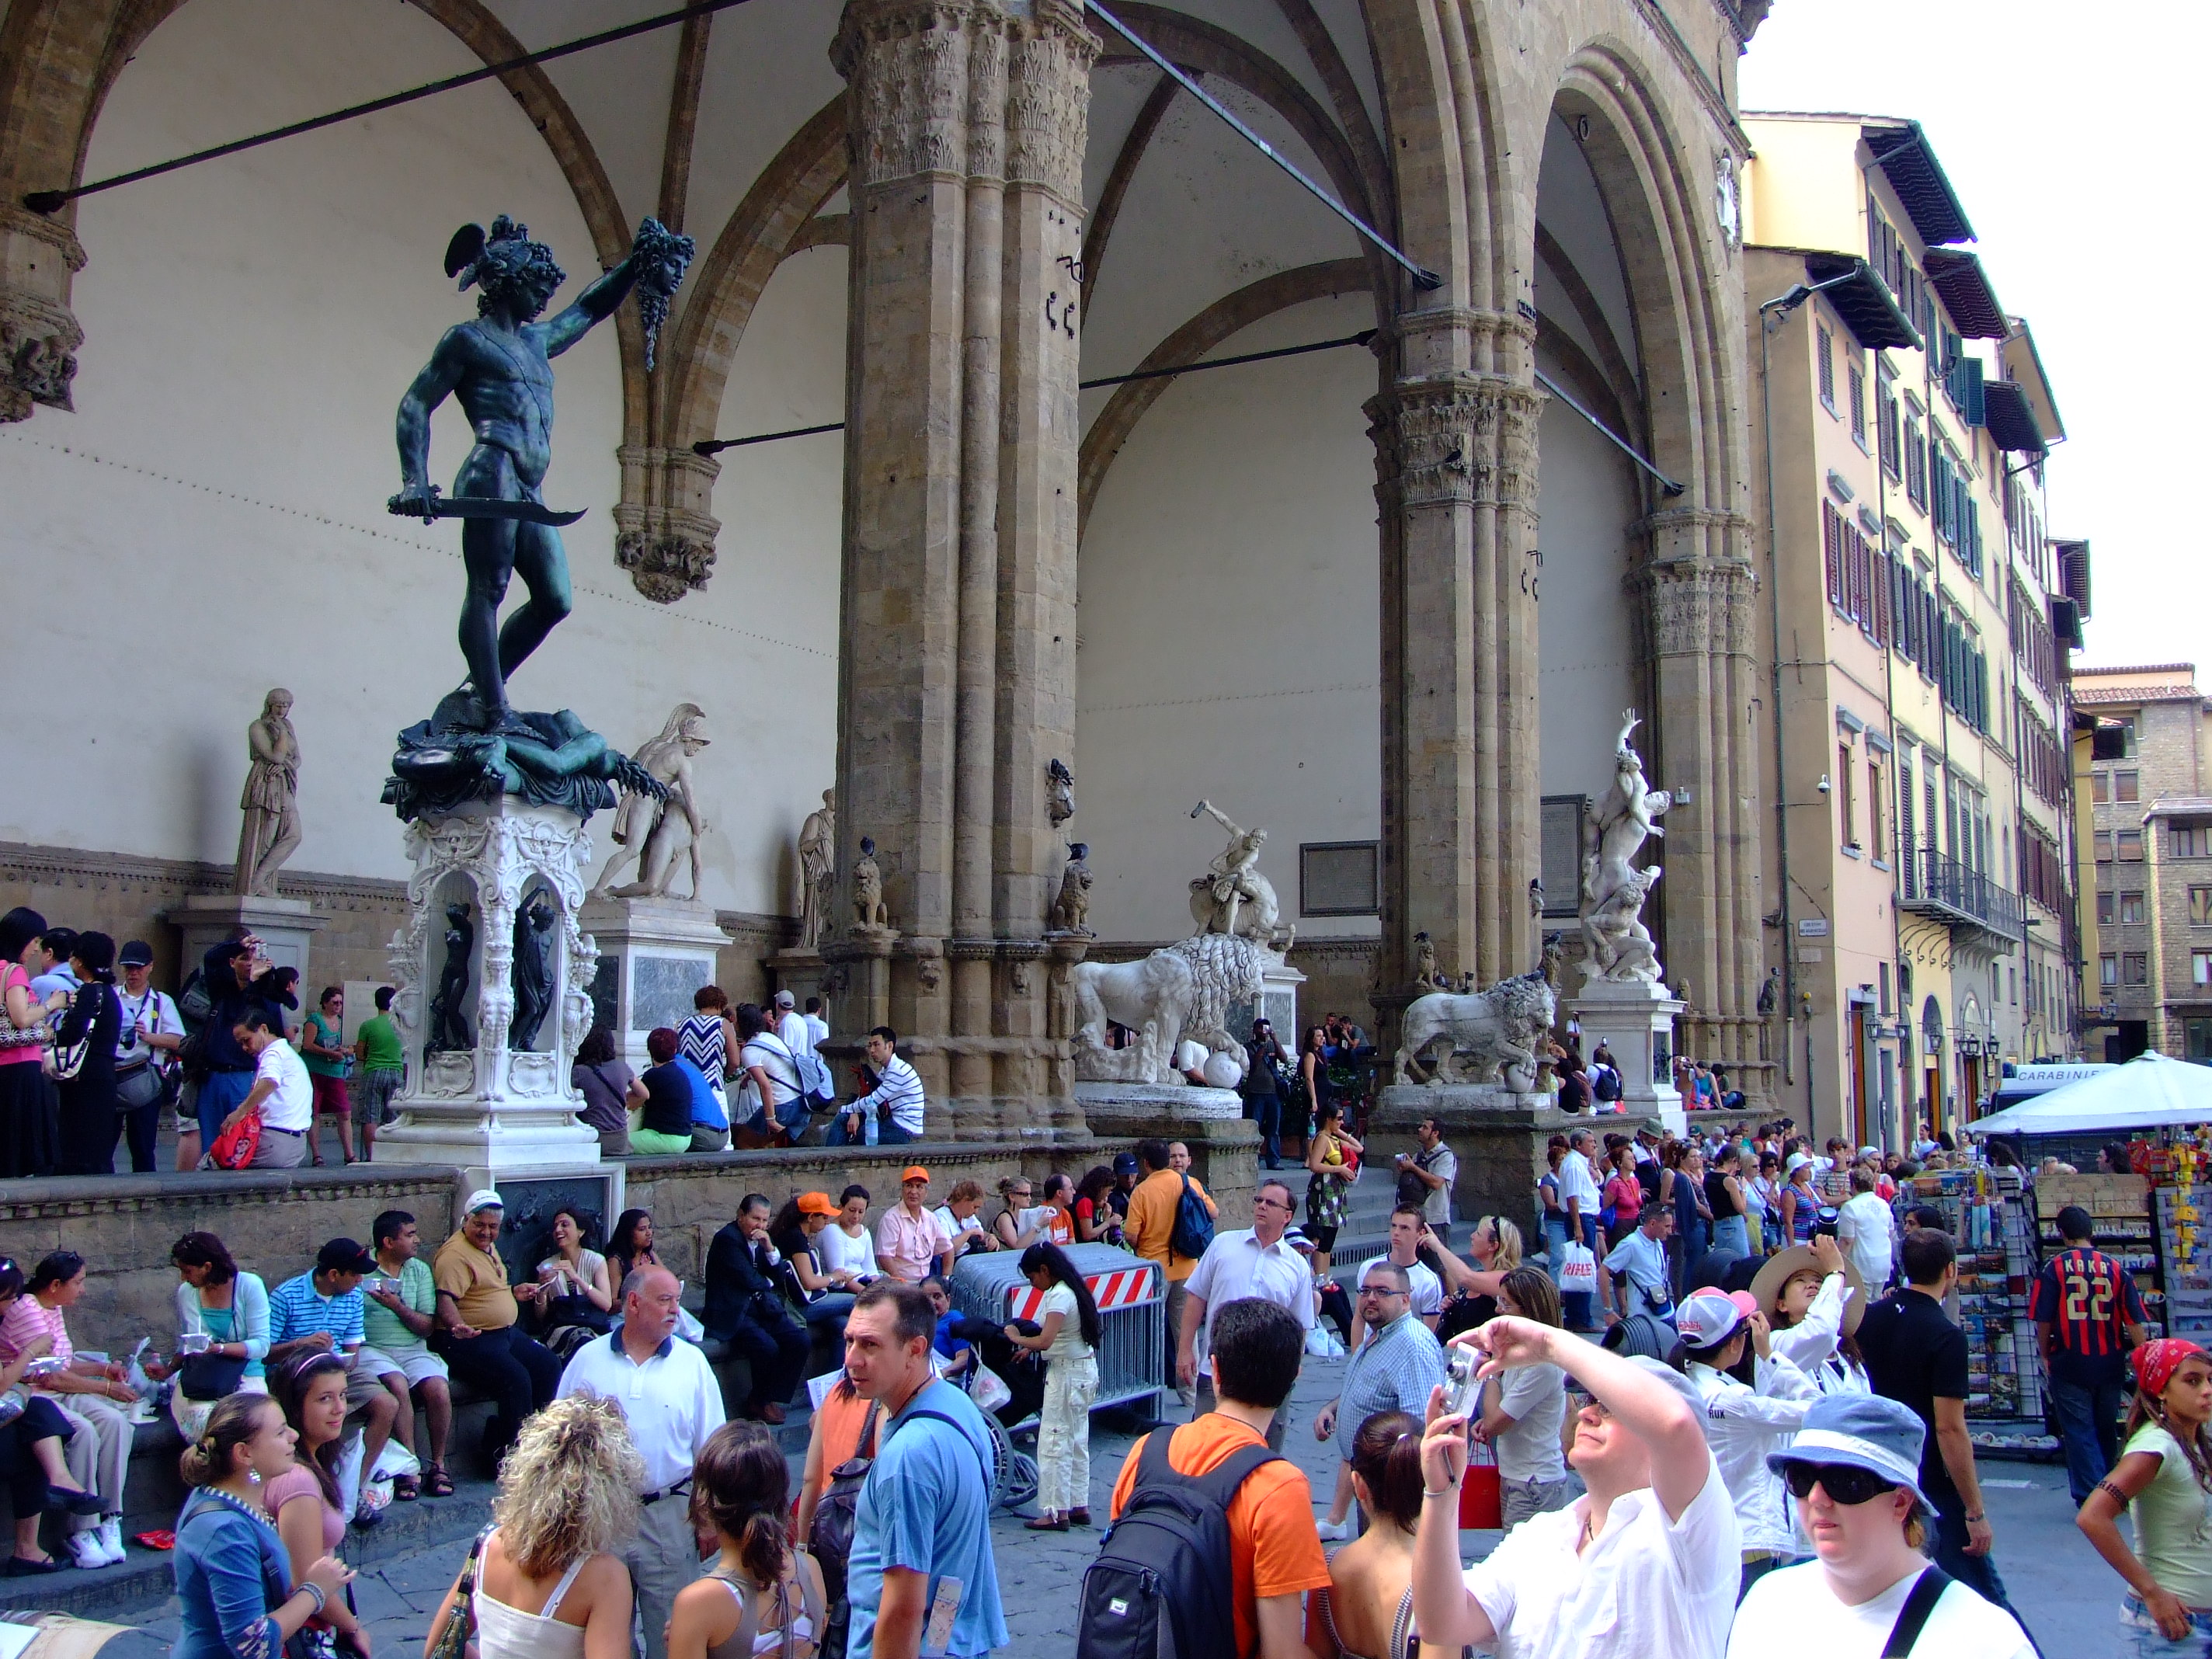 Le directeur du musée qualifie Florence, célèbre ville italienne, de « prostituée »